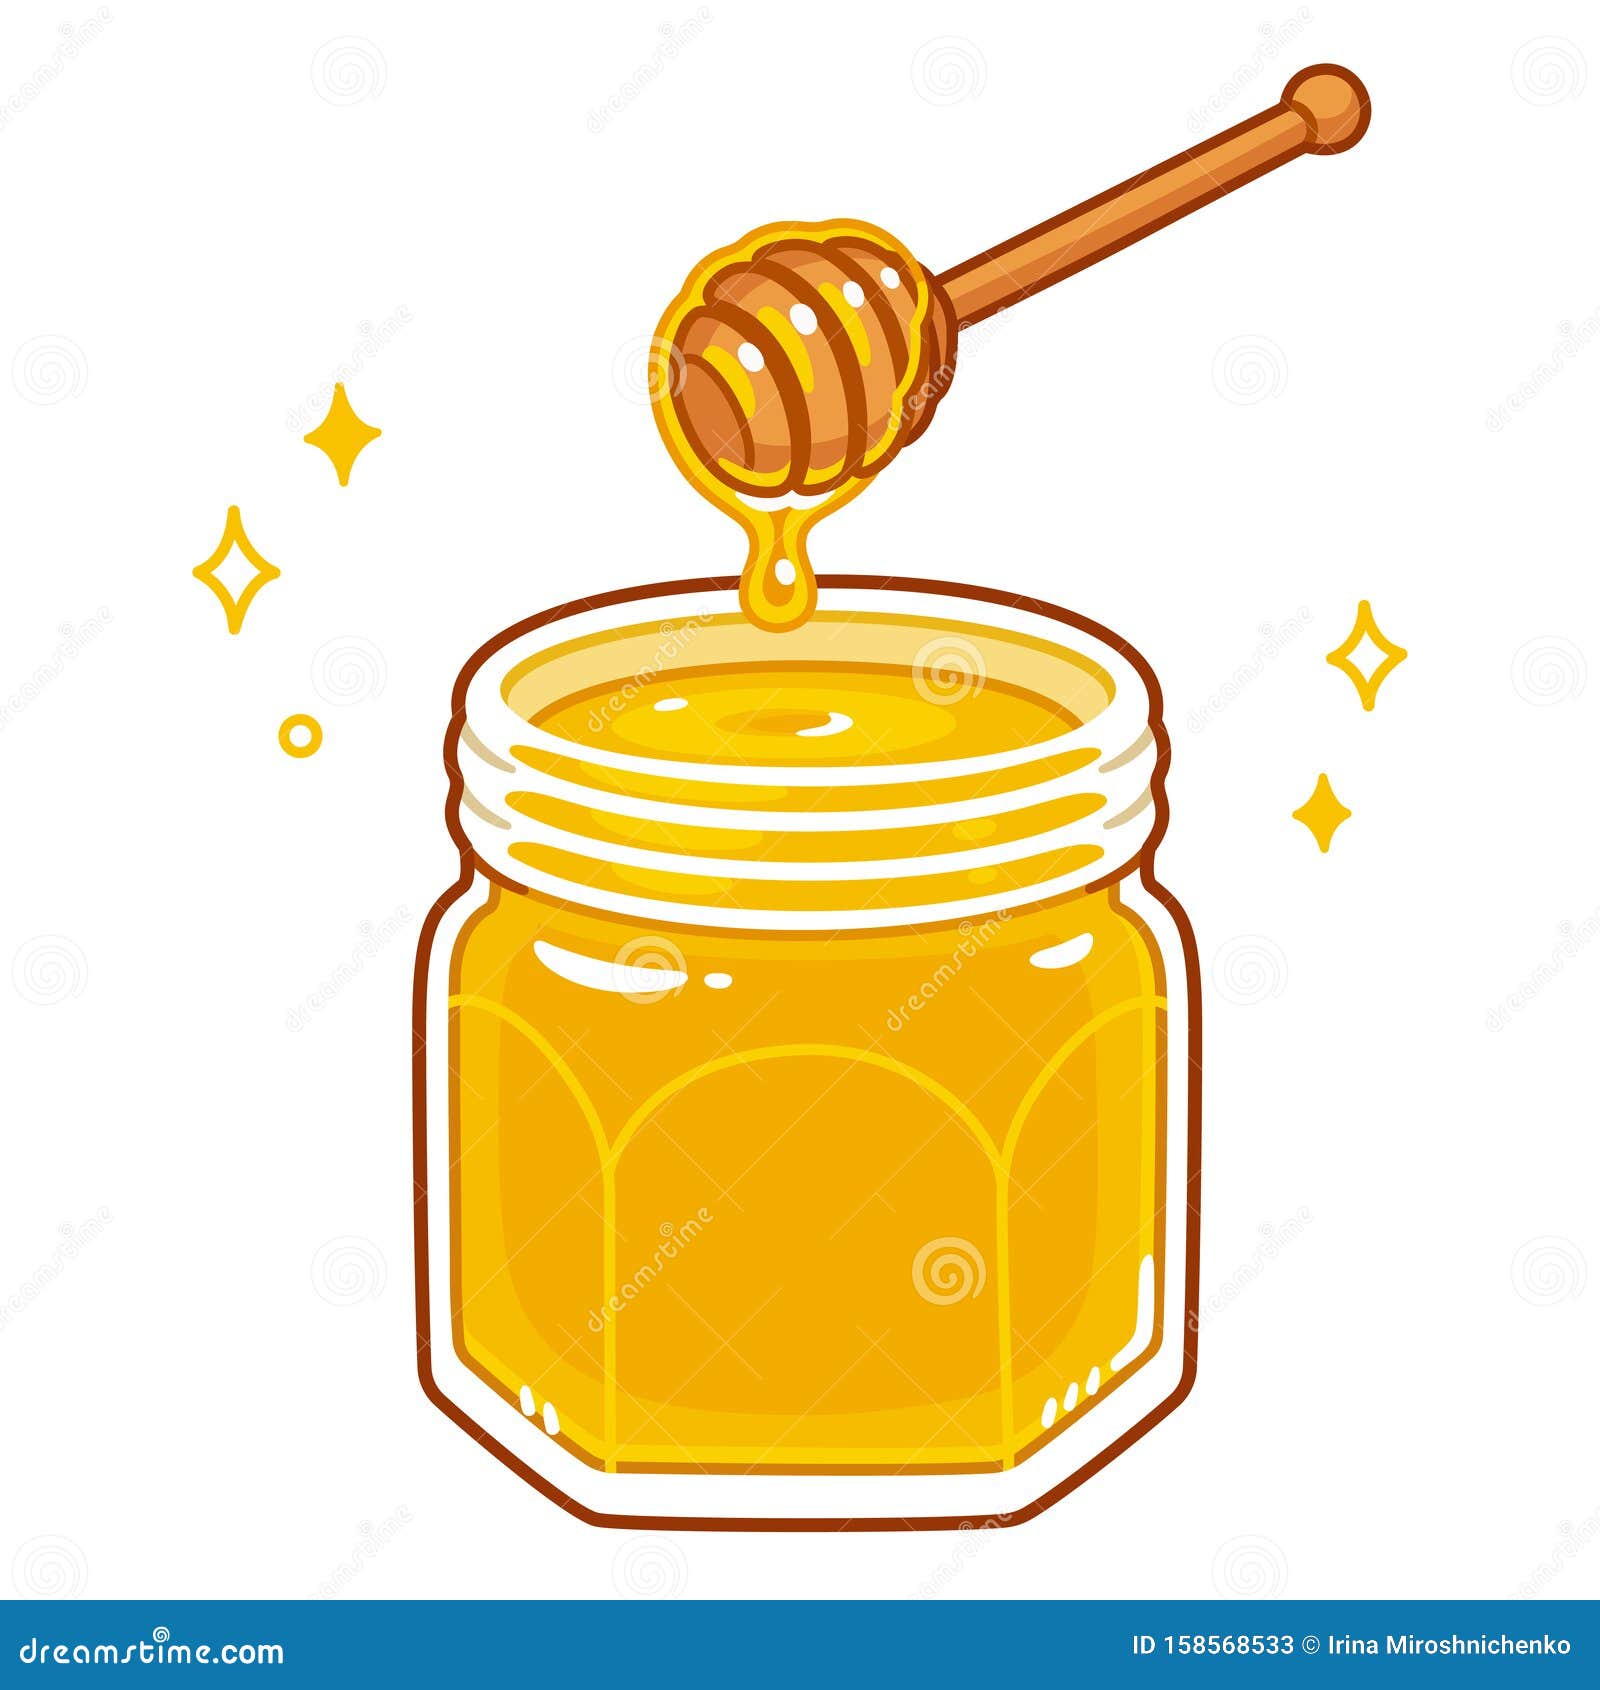 Cartoon honey jar stock vector. Illustration of dipping - 158568533